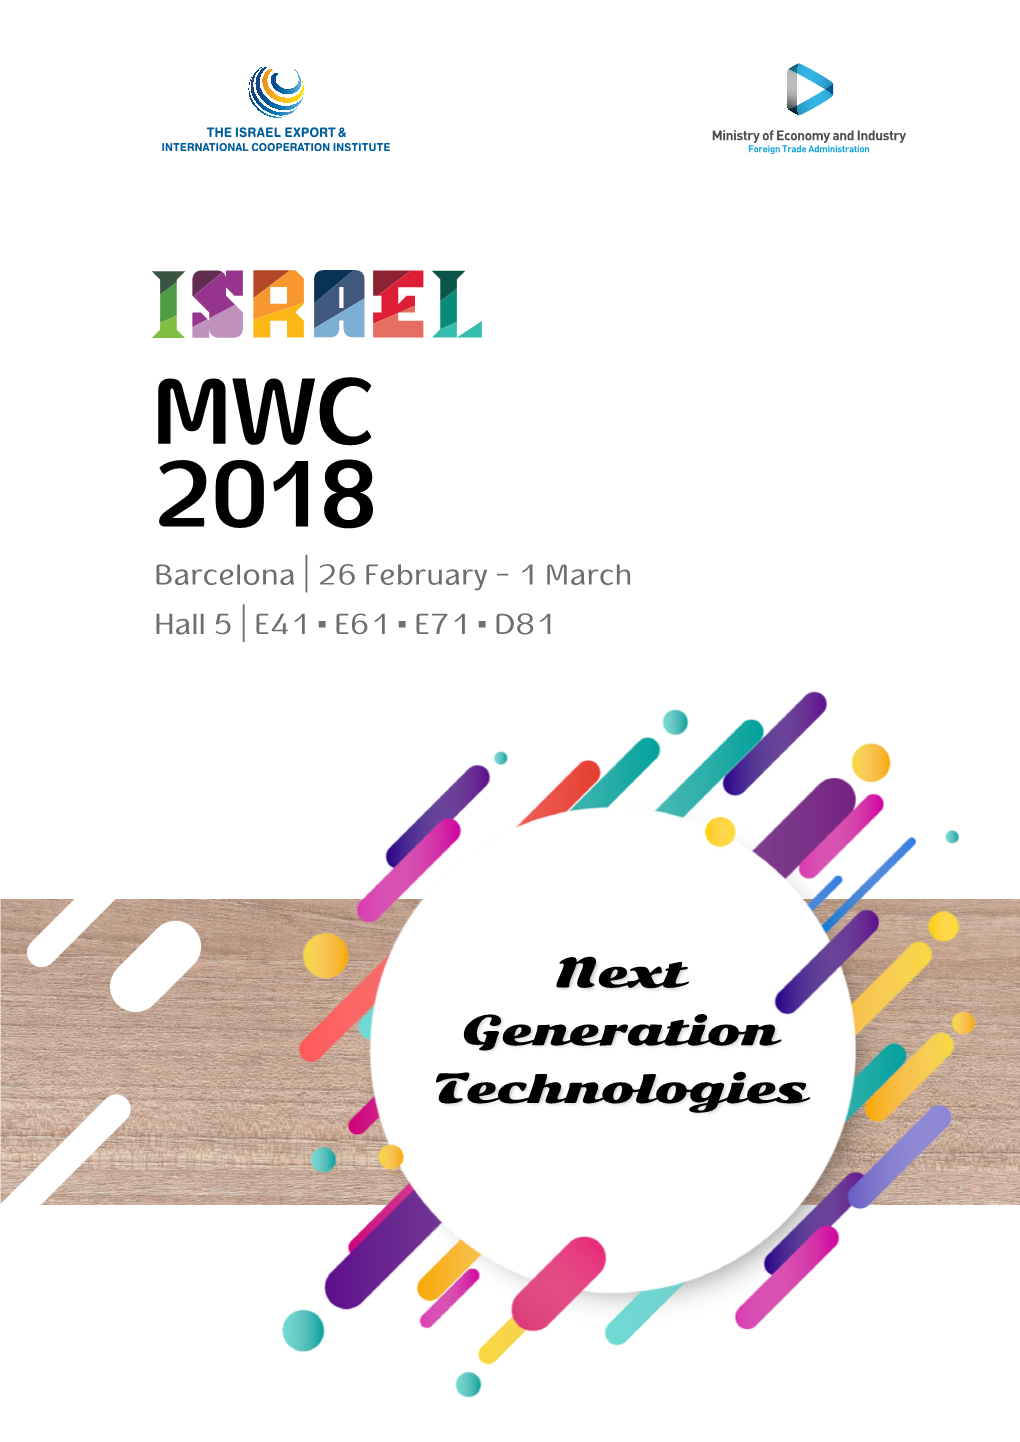 MWC 2018 Barcelona | 26 February - 1 March Hall 5 | E41 ▪ E61 ▪ E71 ▪ D81